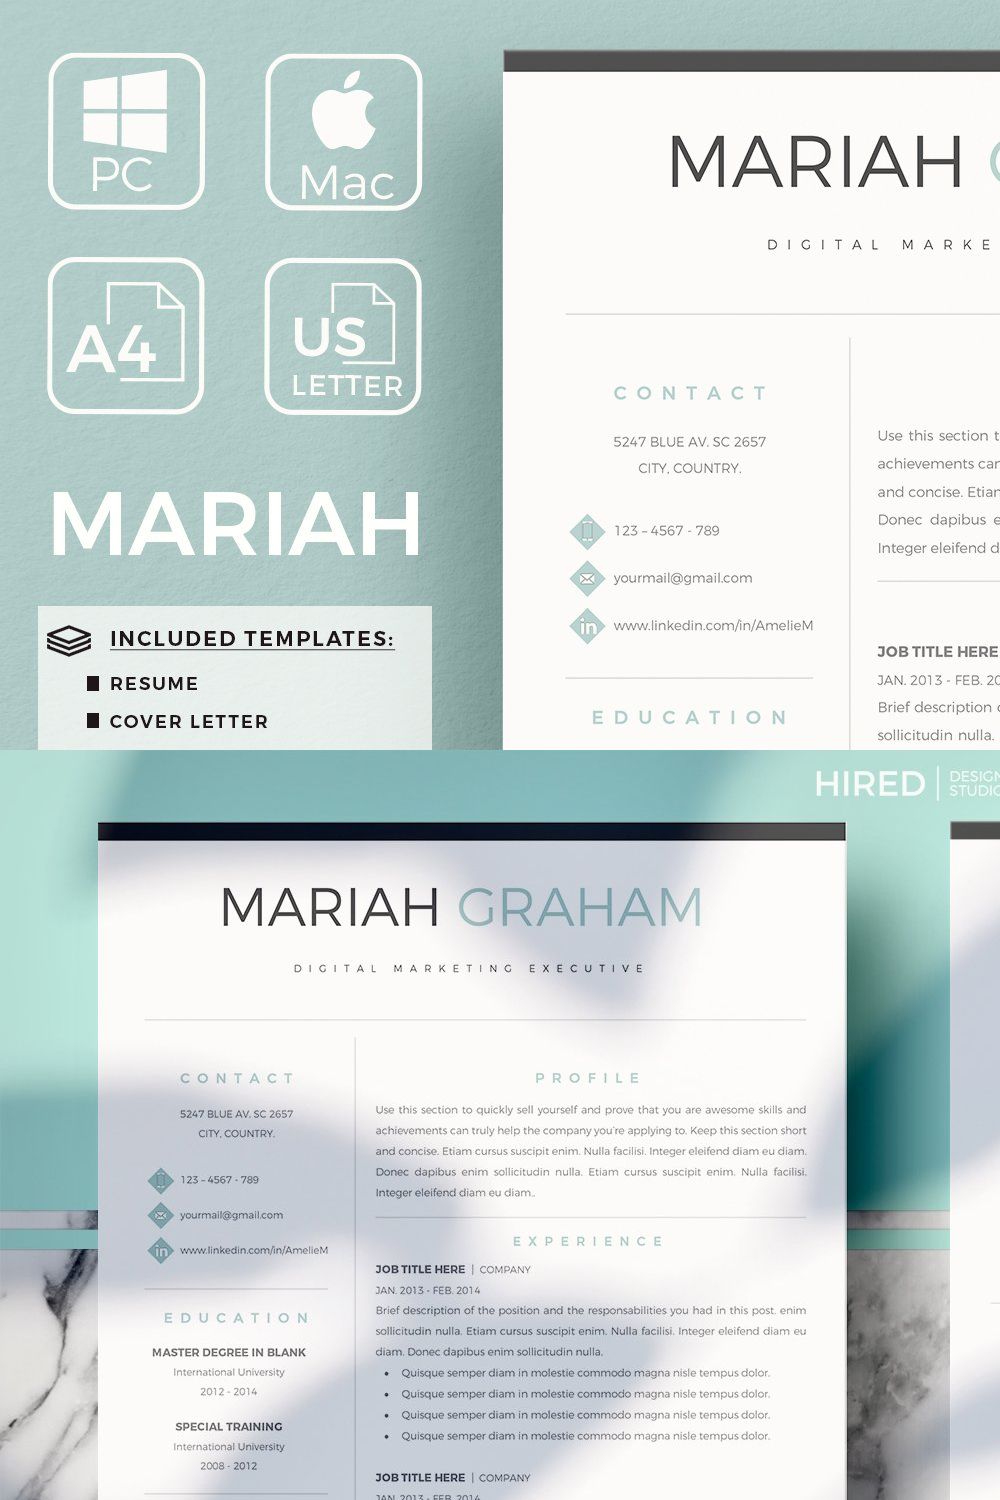 Modern Resume design + Cover Letter pinterest preview image.